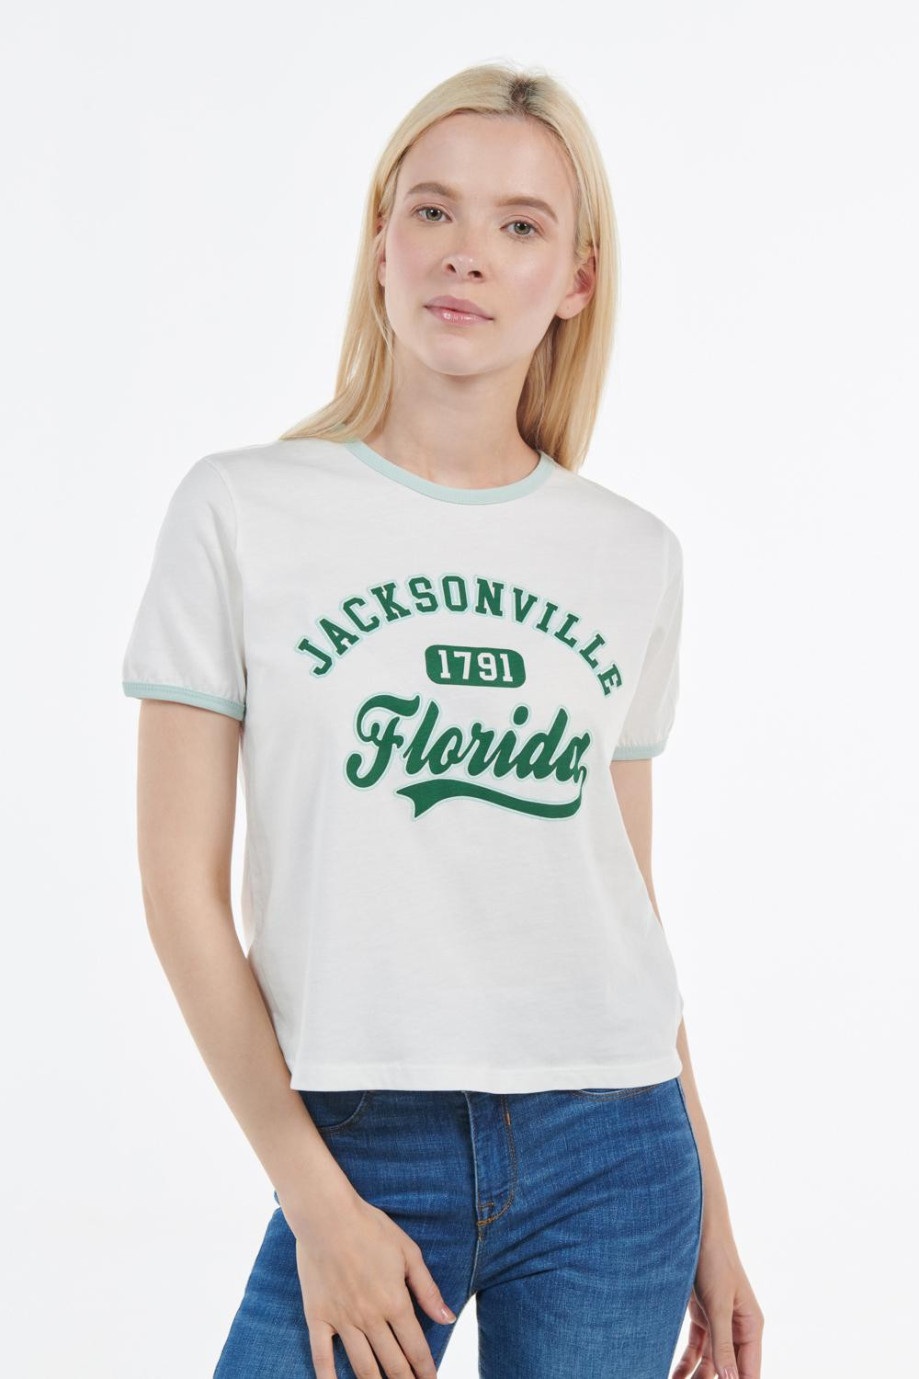 Camiseta manga corta crema clara con contrastes y diseño college verde